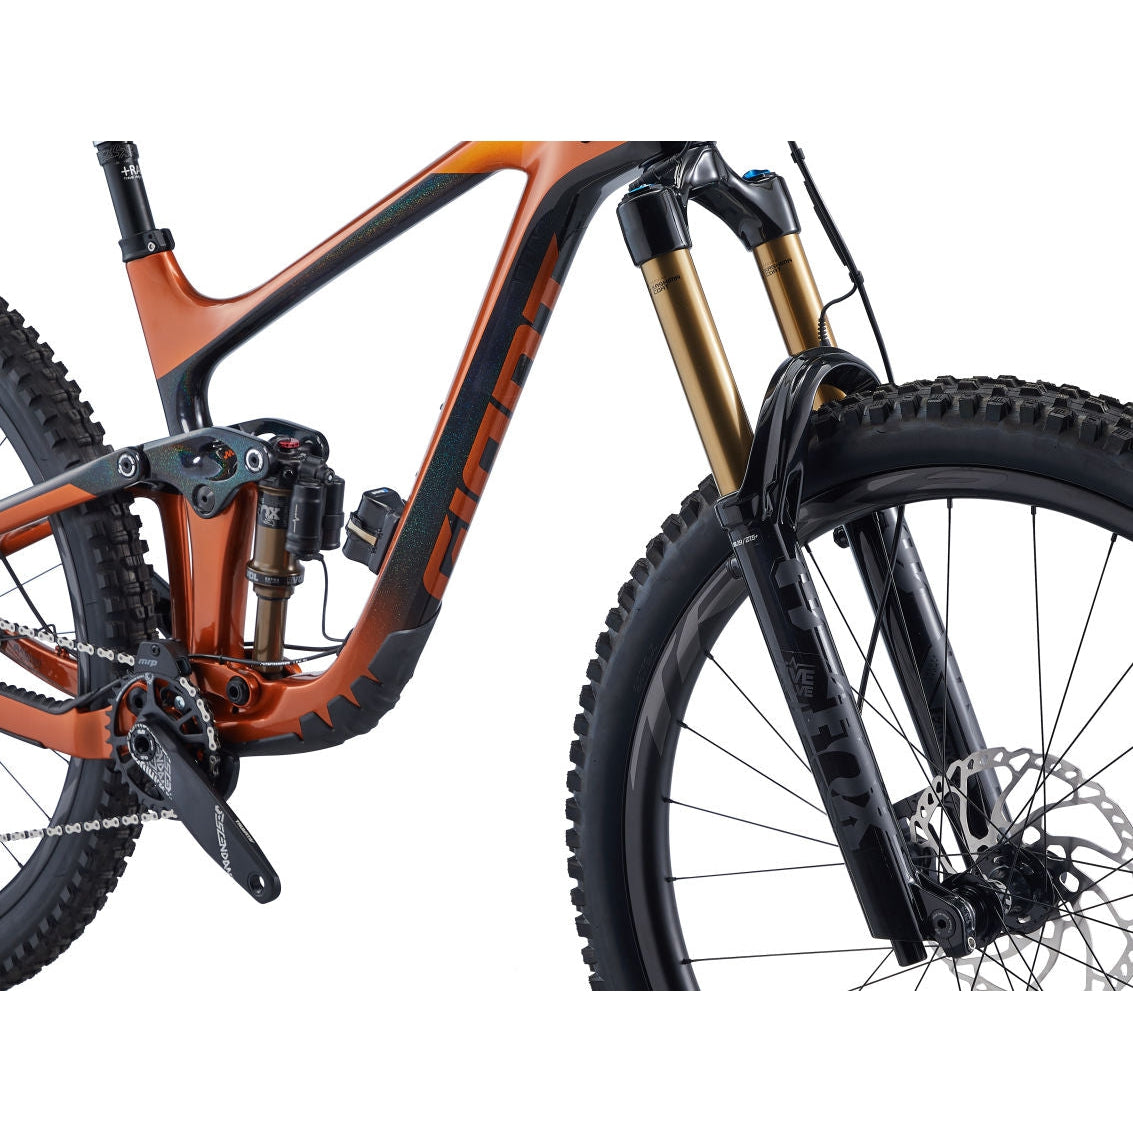 Giant Reign Advanced Pro 29 1 Carbon Mountain Bike - Bikes - Bicycle Warehouse